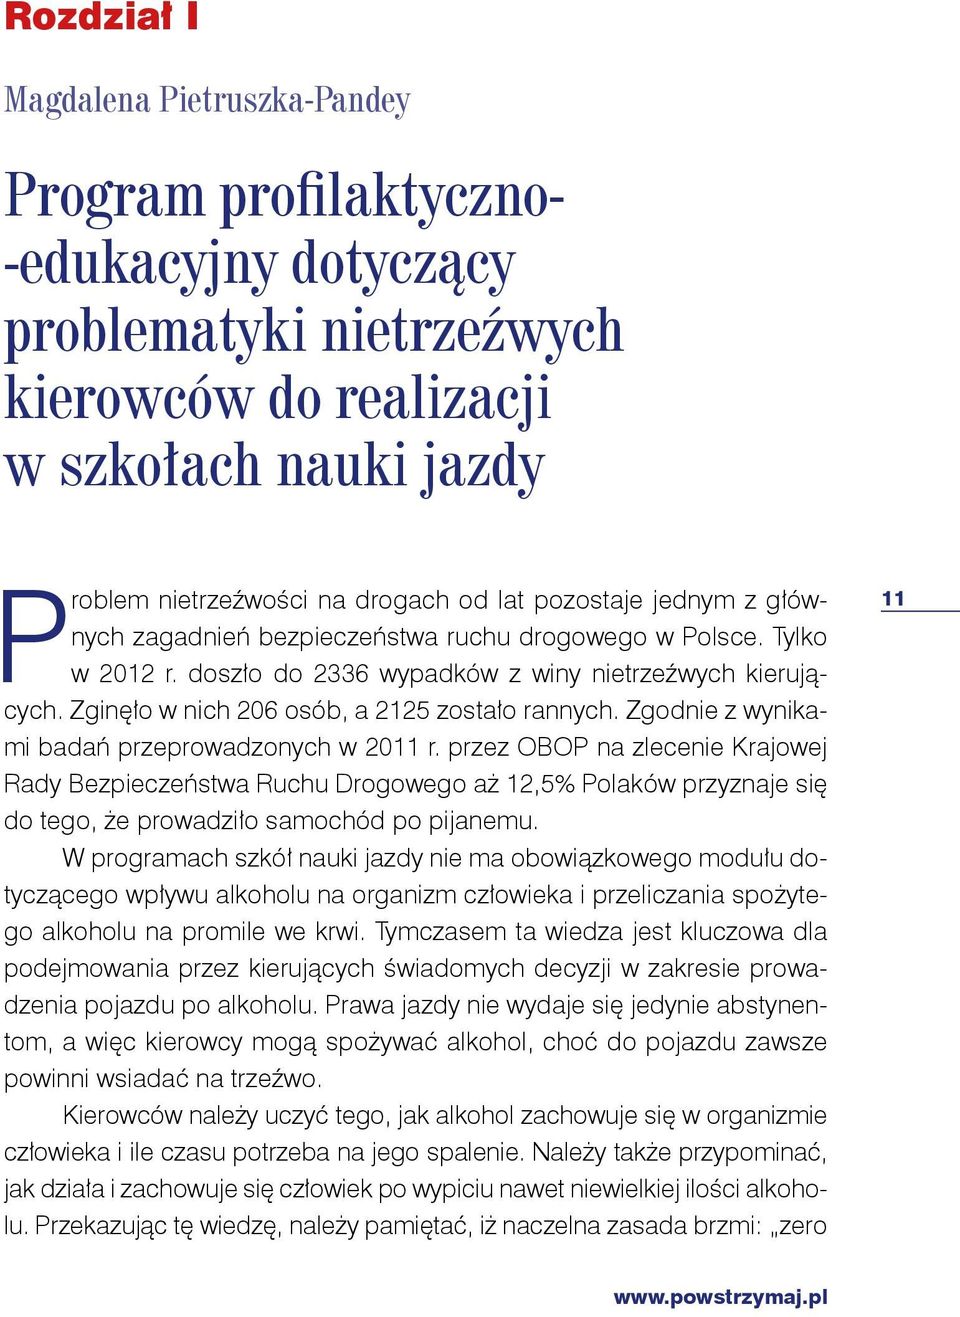 Zgodnie z wynikami badań przeprowadzonych w 2011 r. przez OBOP na zlecenie Krajowej Rady Bezpieczeństwa Ruchu Drogowego aż 12,5% Polaków przyznaje się do tego, że prowadziło samochód po pijanemu.